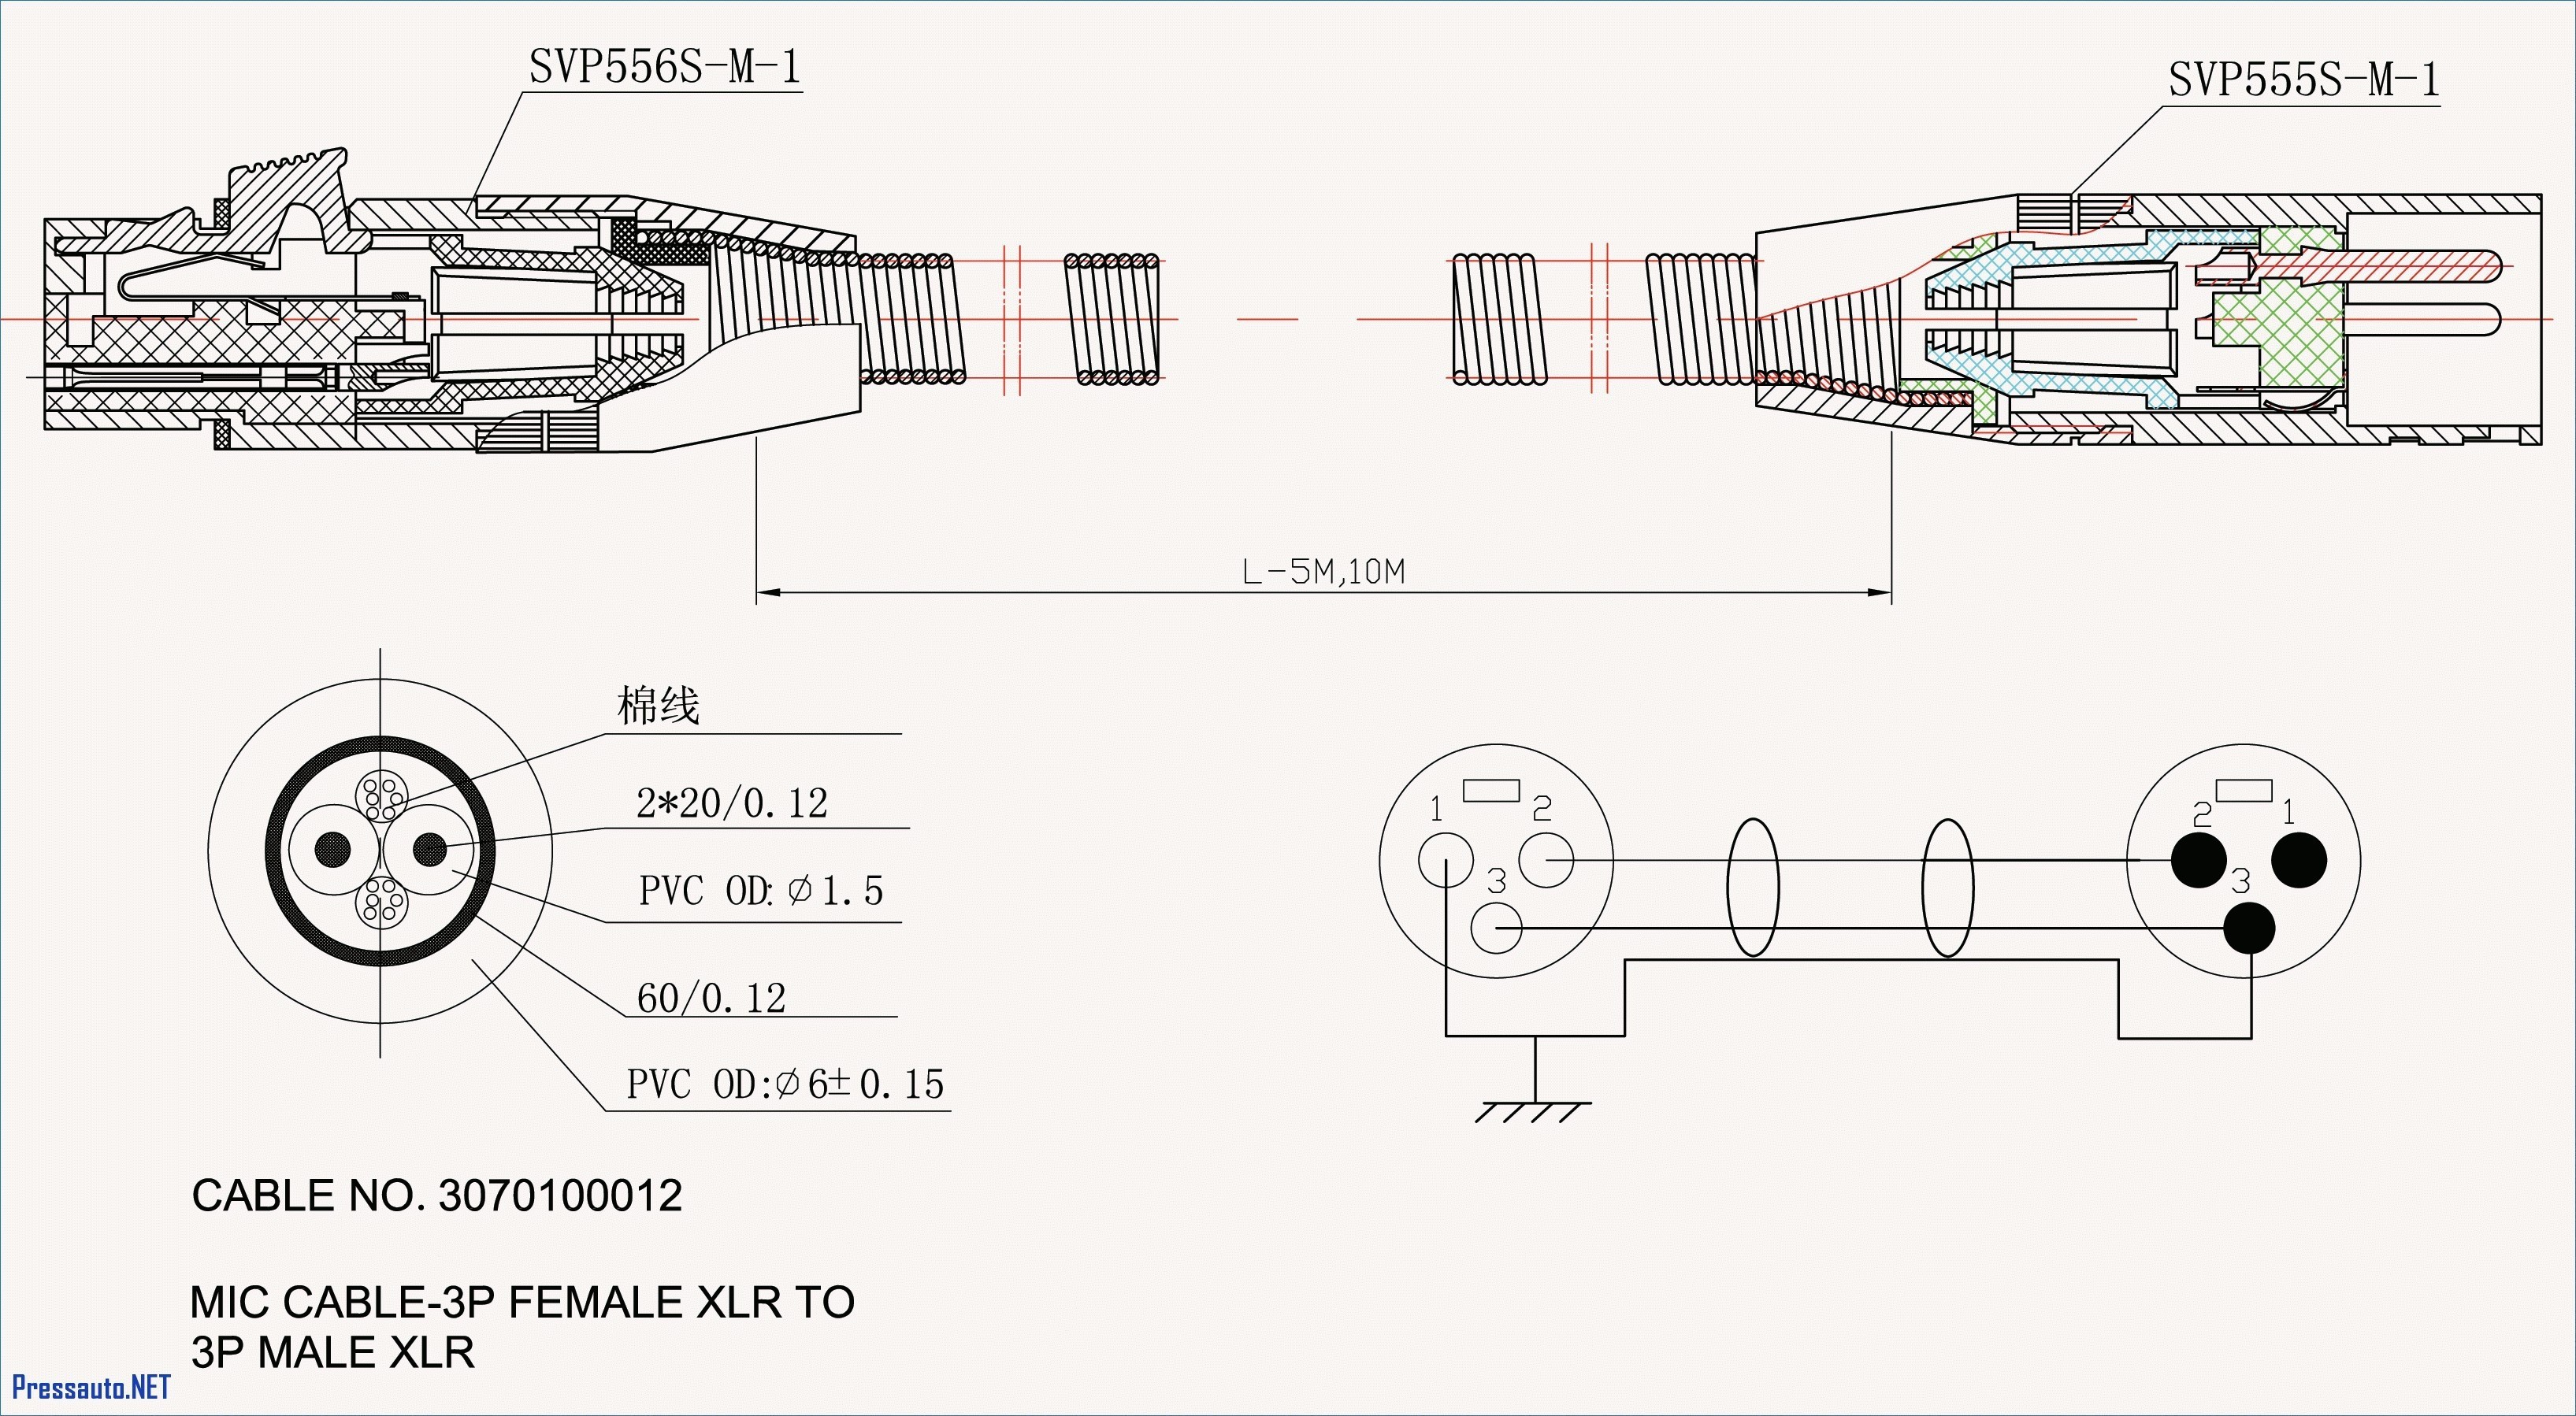 Trailer Brake Wiring Diagram 7 Way Female 7 Pin Wiring Diagram Trusted Schematics Diagram Of Trailer Brake Wiring Diagram 7 Way